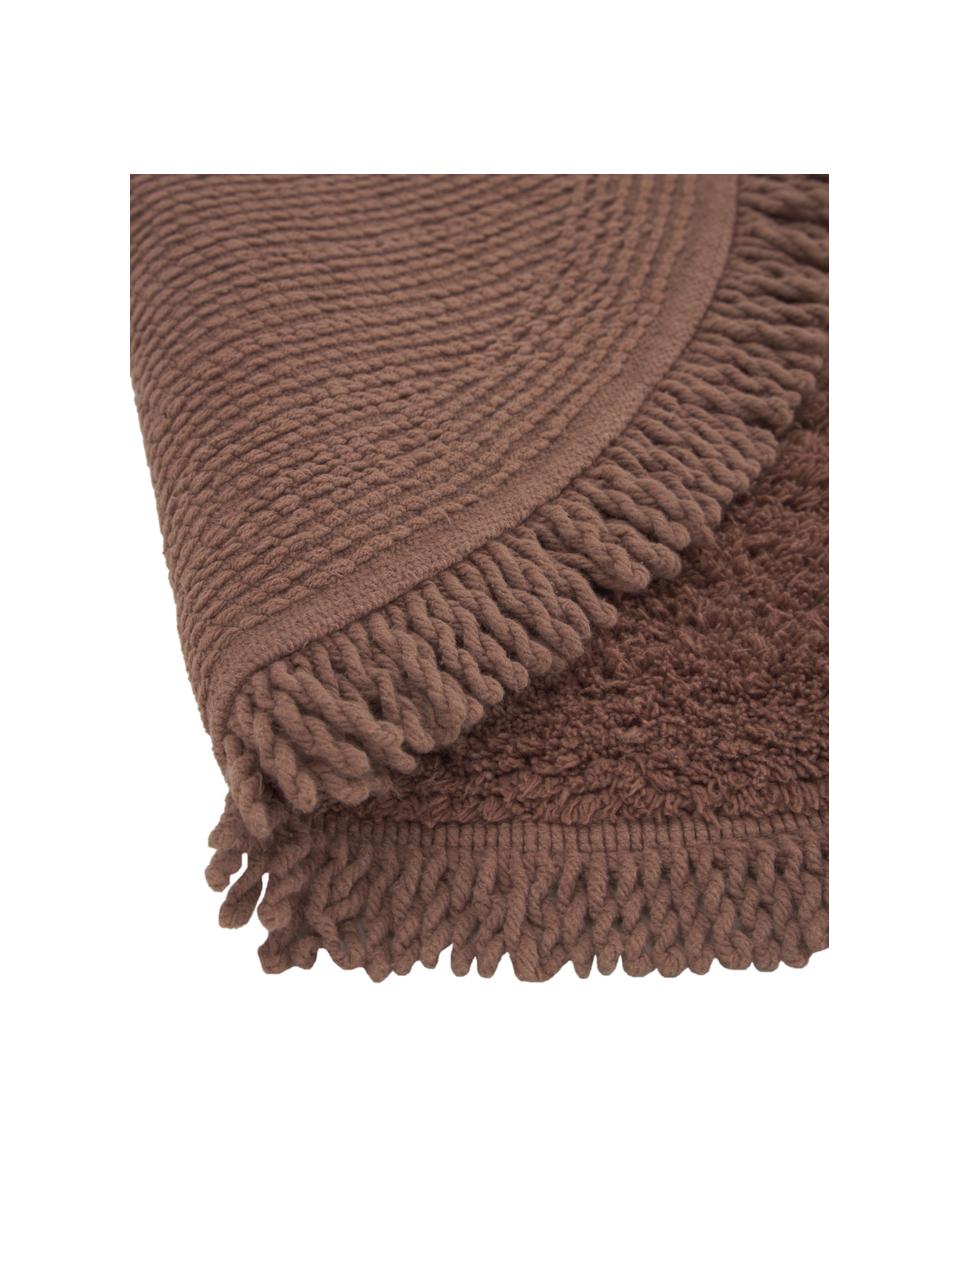 Runder Badvorleger Loose aus Baumwolle in Braun, 100 % Baumwolle, Braun, Ø 70 cm